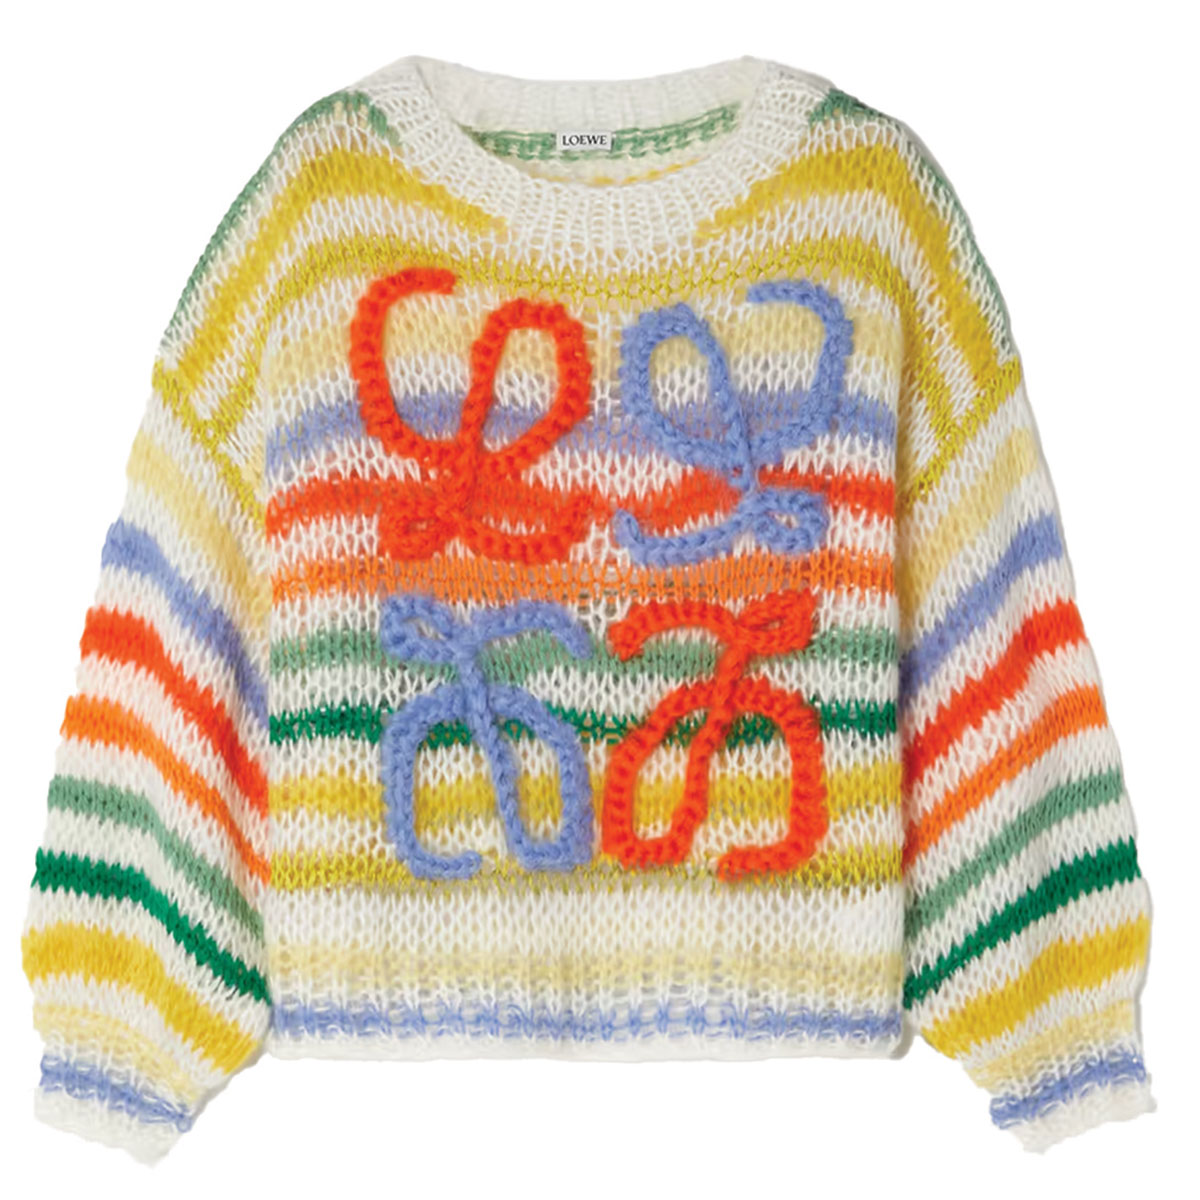 Loewe Sweater